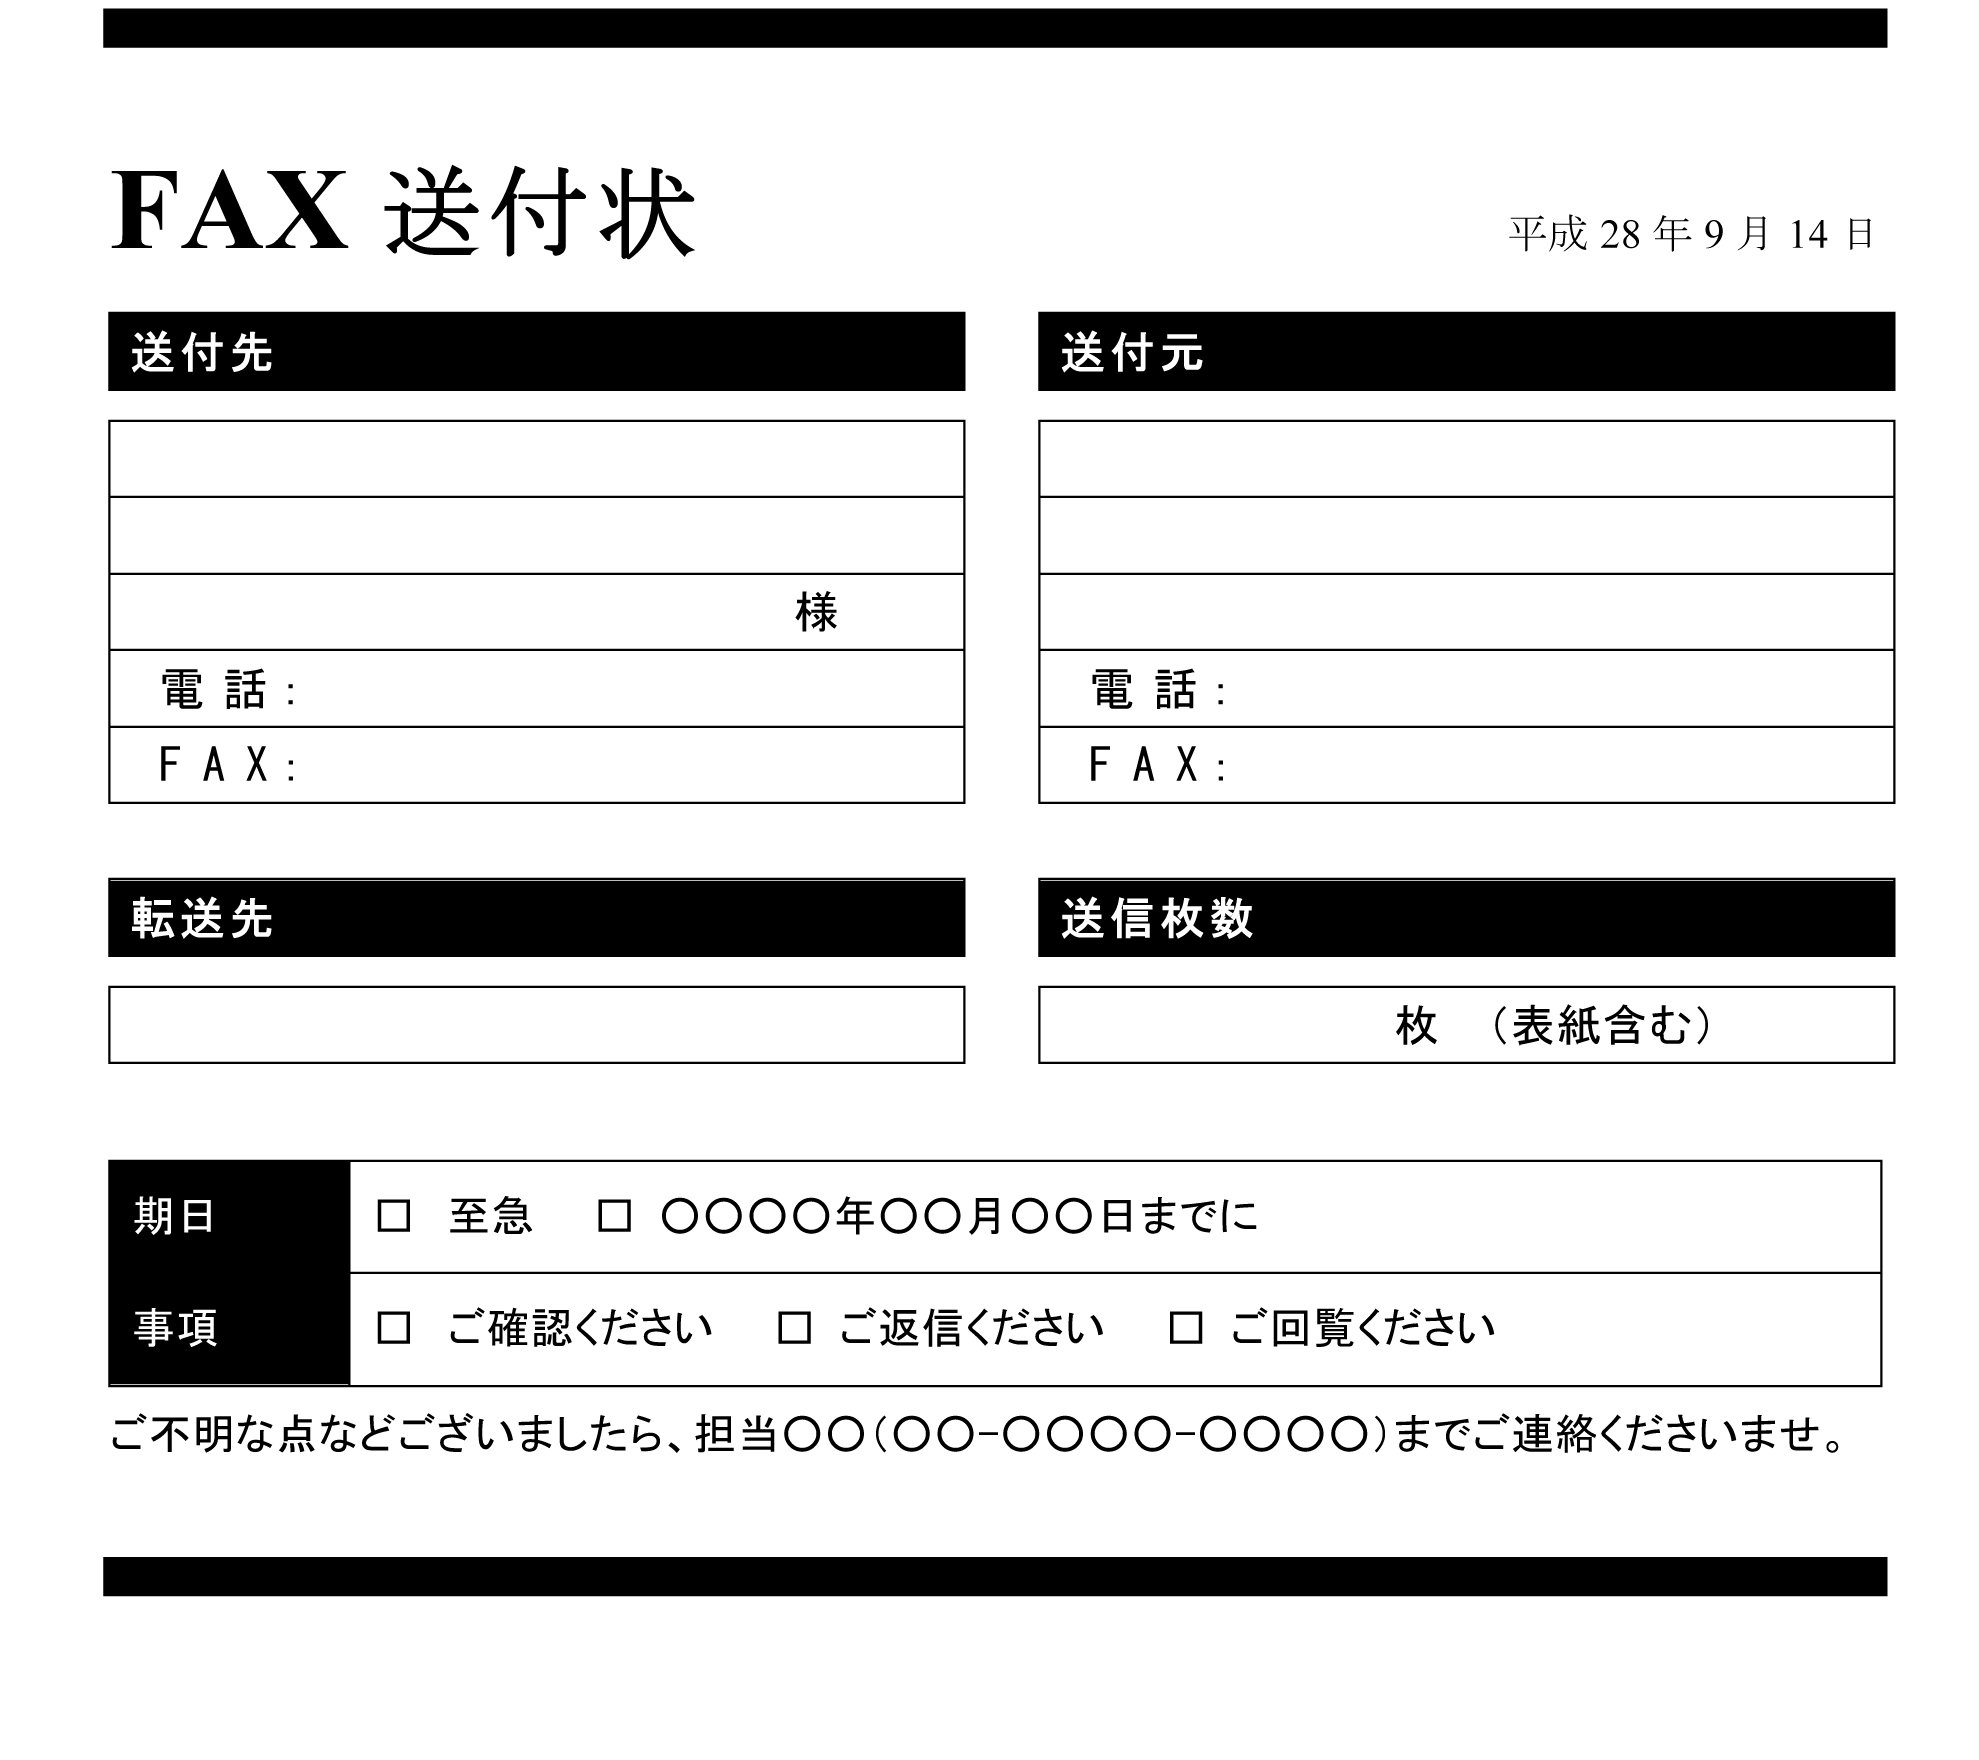 会員登録不要で無料でダウンロードできるfax送信状のテンプレート書式 テンプレート フリーbiz